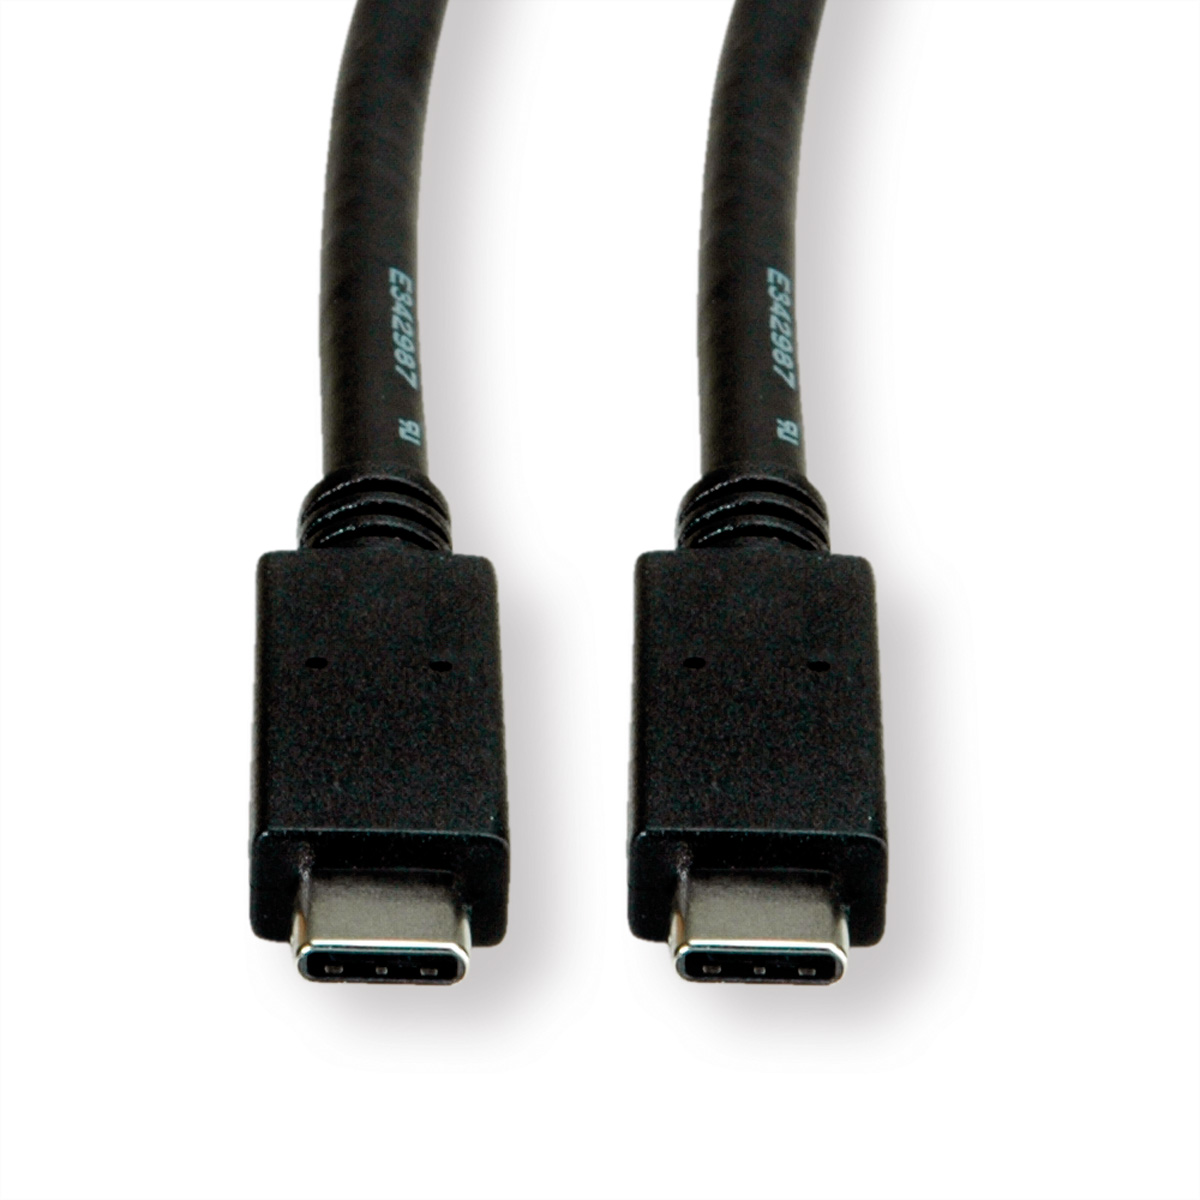 3.2 C-C, 3.2 ST/ST USB 2 GREEN ROLINE USB Kabel, Kabel Gen